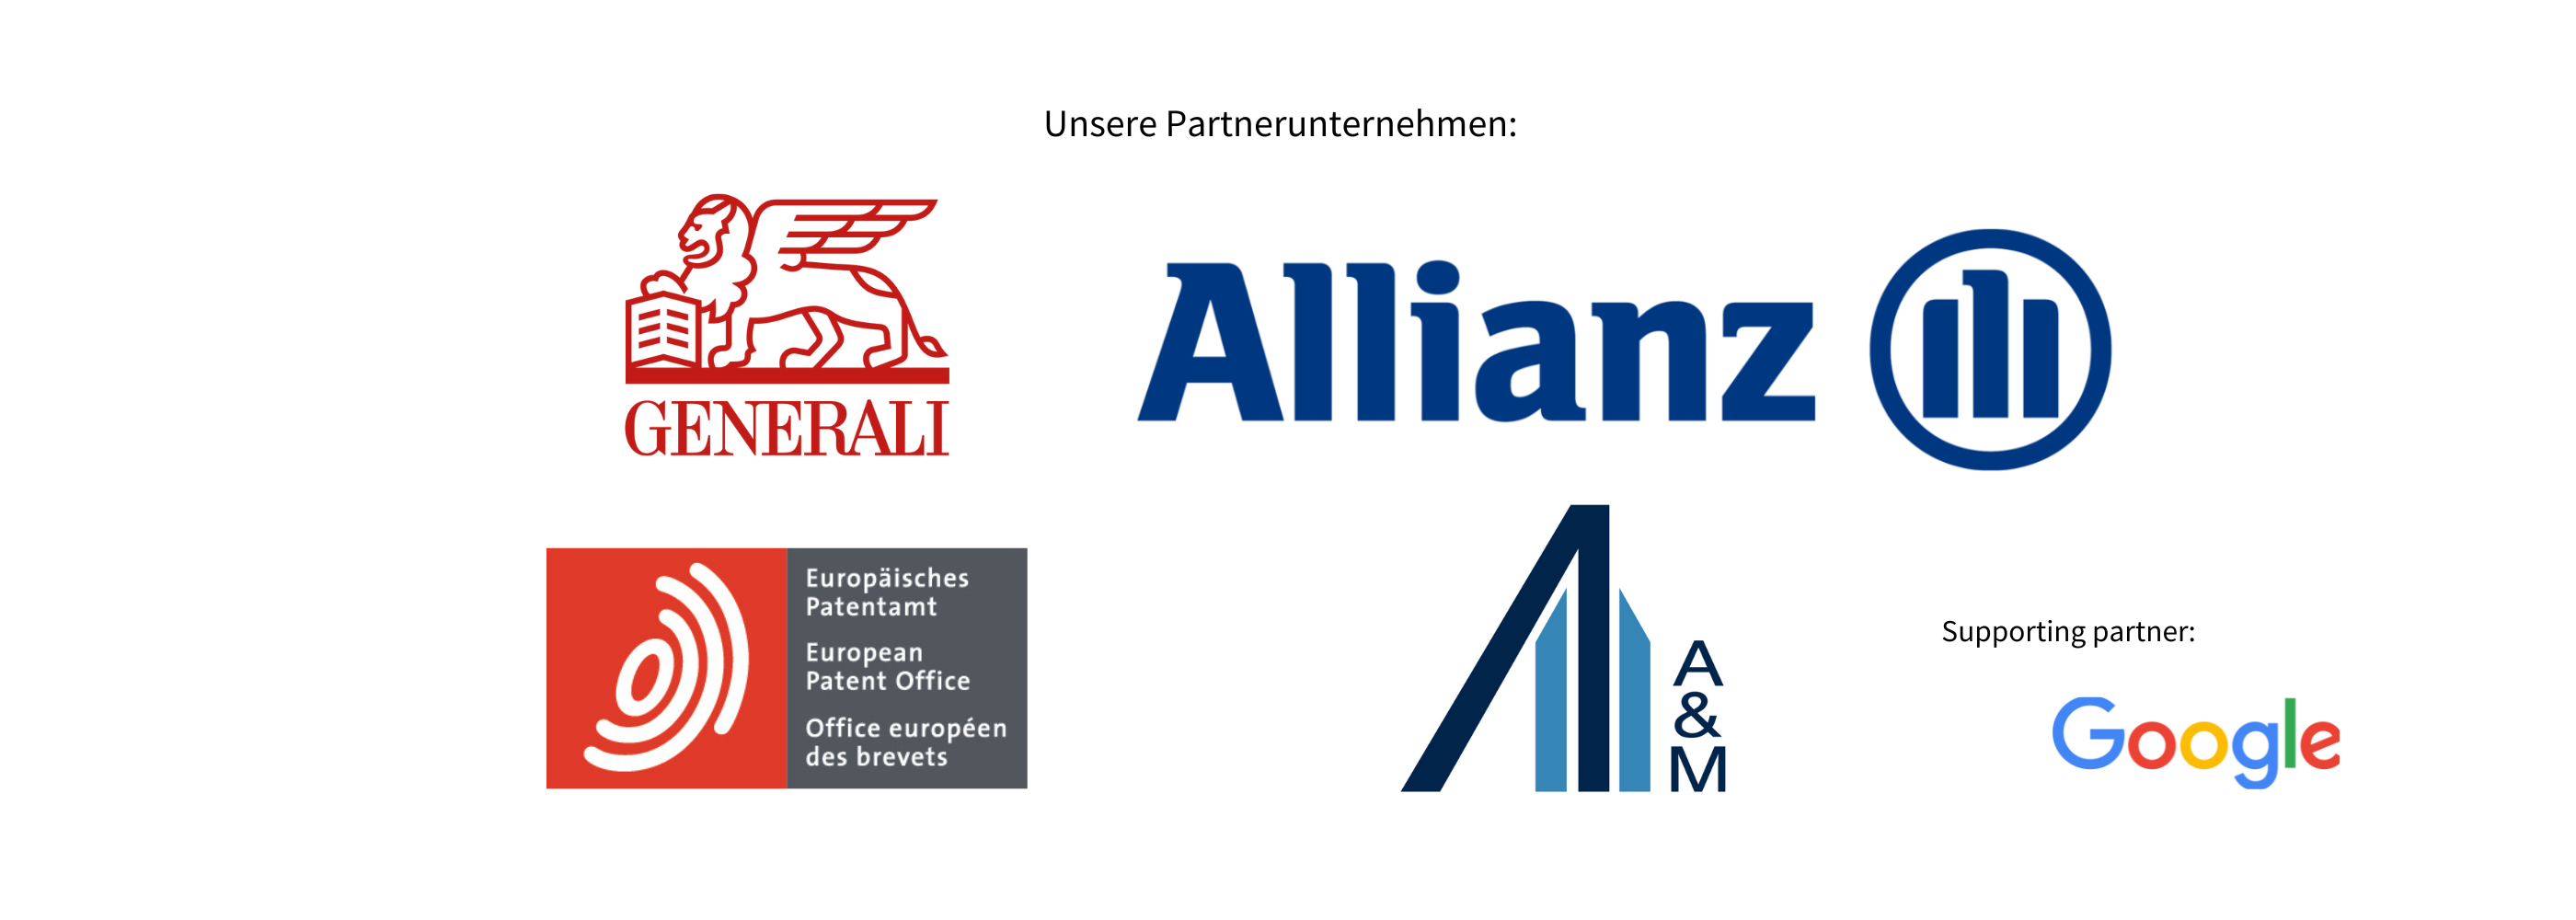 Unsere Partnerunternehmen Generali, Allianz, Alvare und Marsal, Europäisches Patentamt, Google als supporting partner